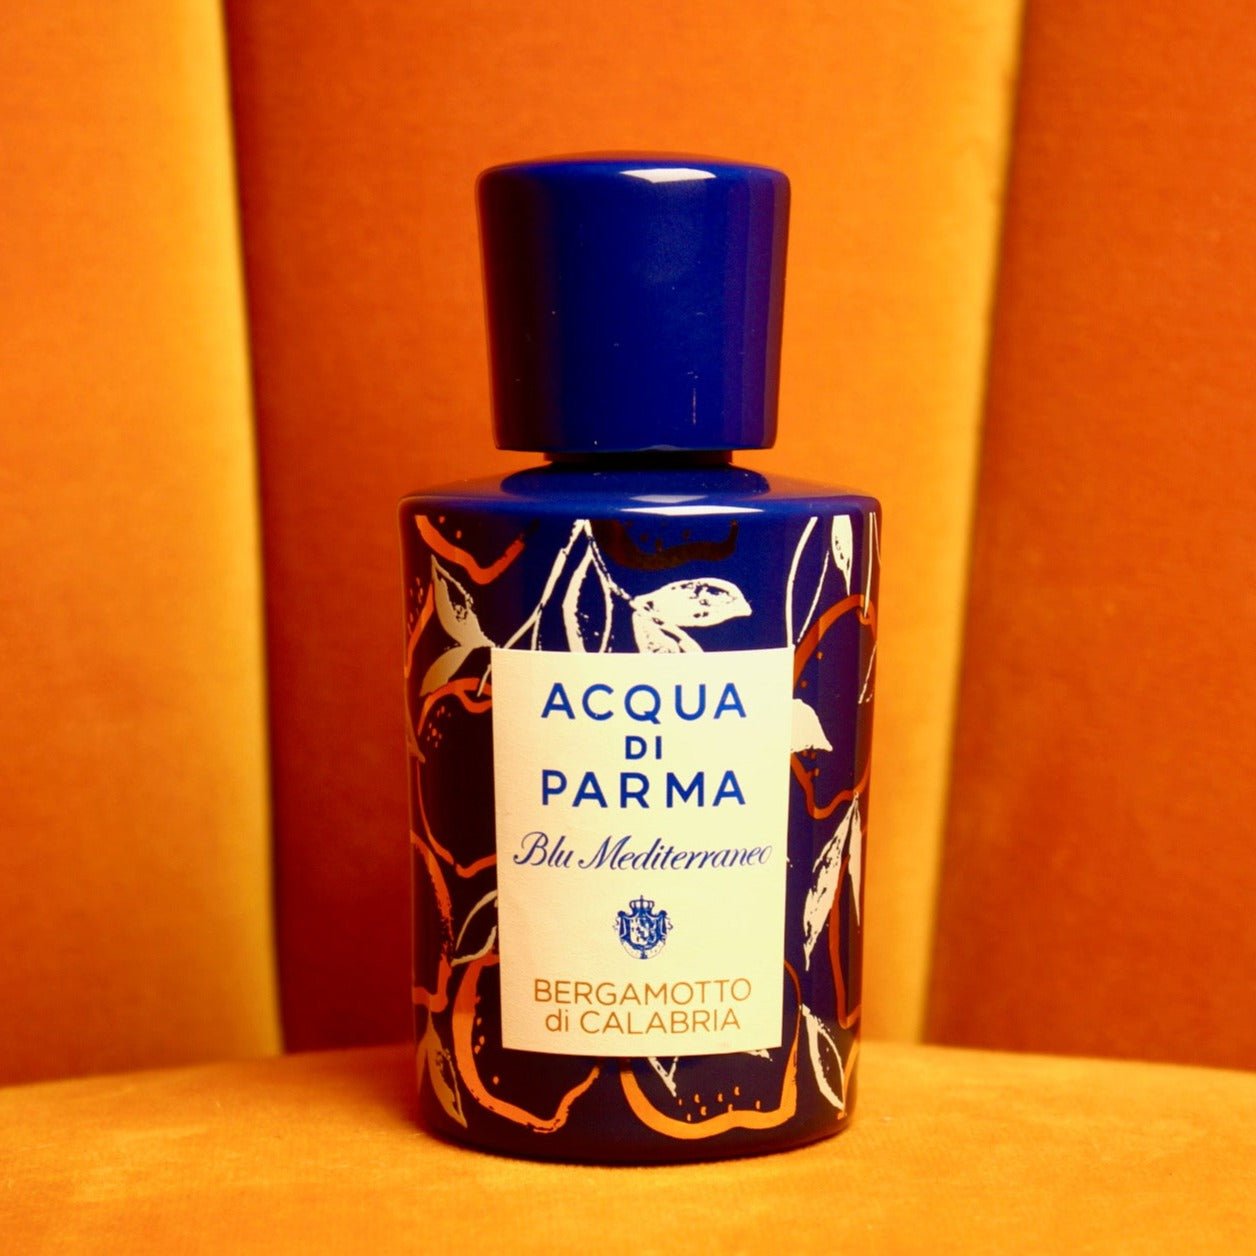 Acqua Di Parma Blu Mediterraneo Bergamotto Di Calabria EDT | My Perfume Shop Australia